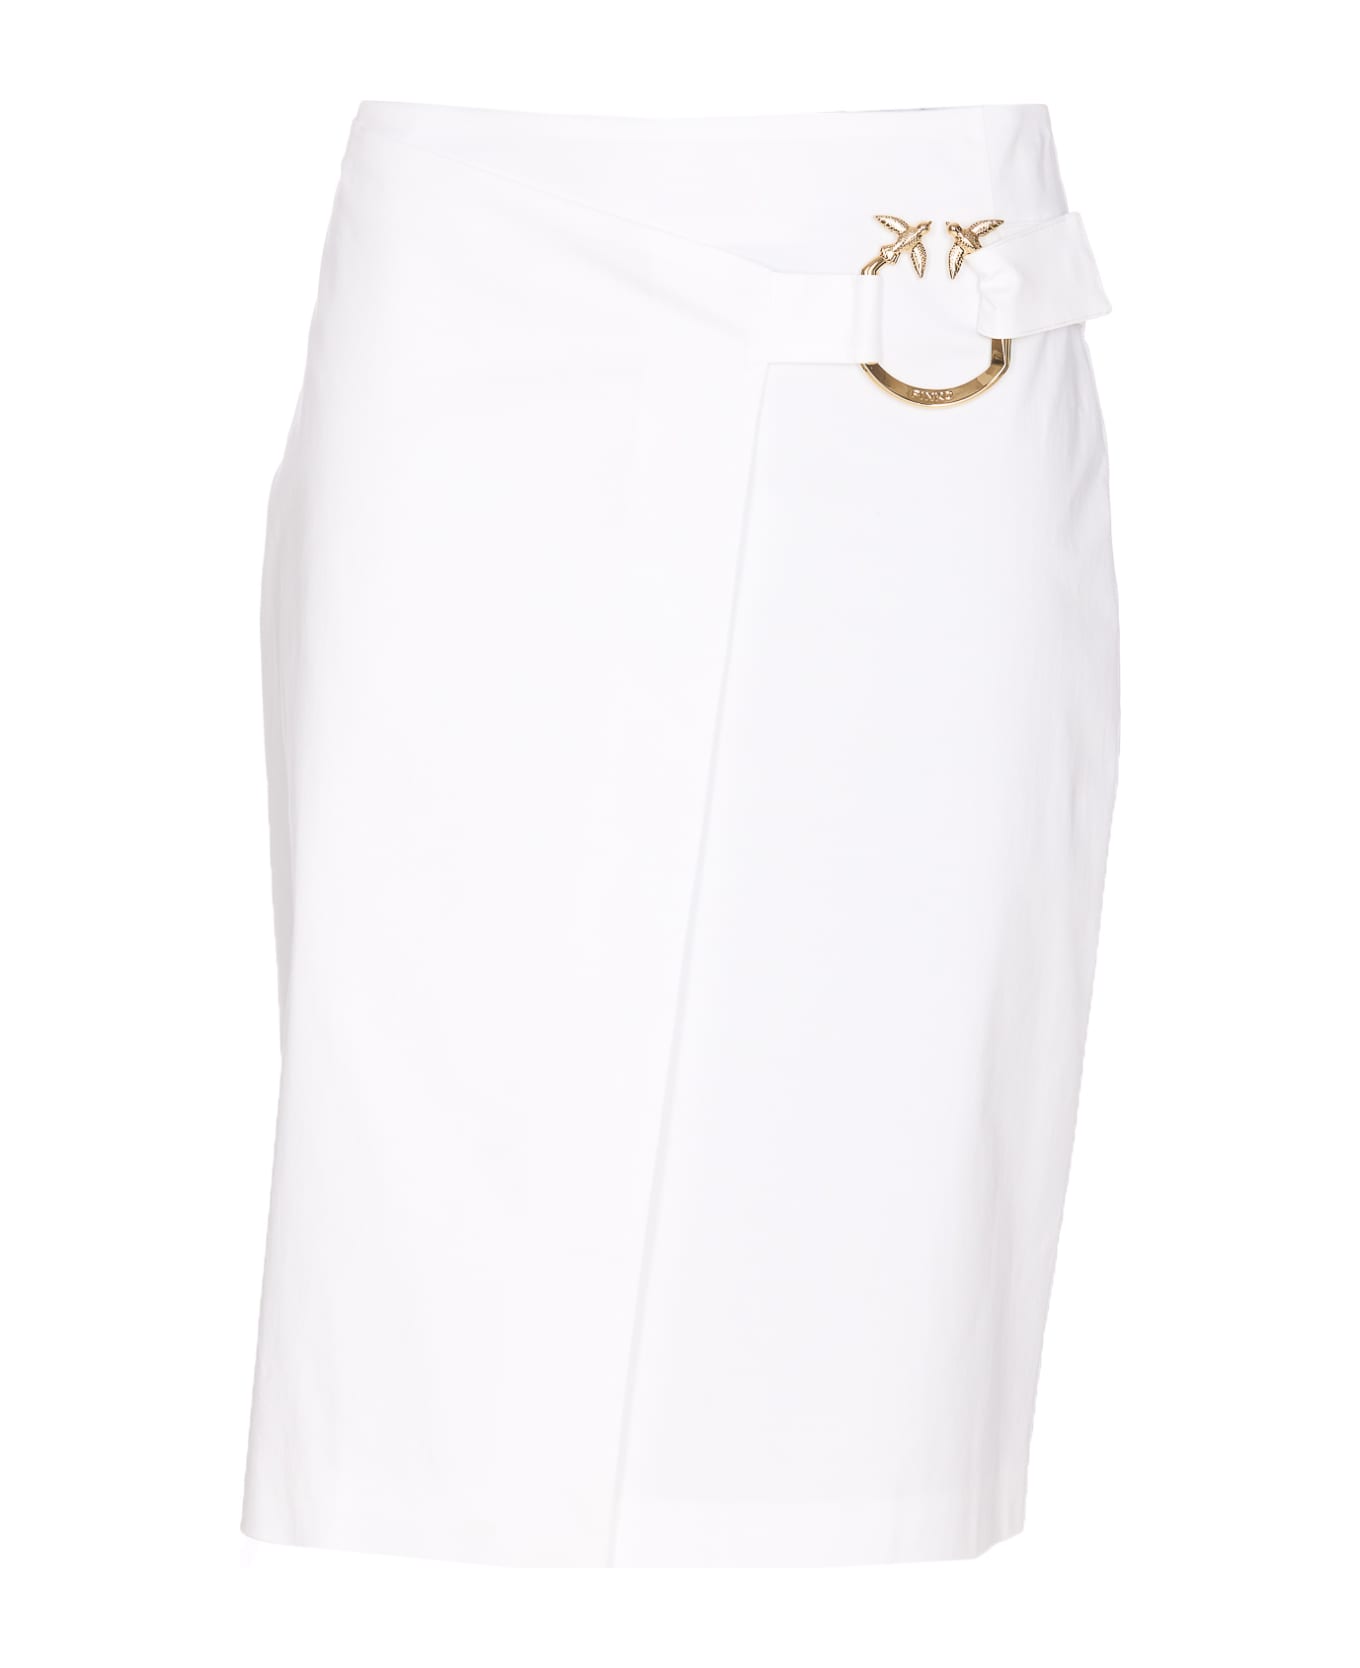 Pinko Piercing Buckle Longuette Skirt - White スカート